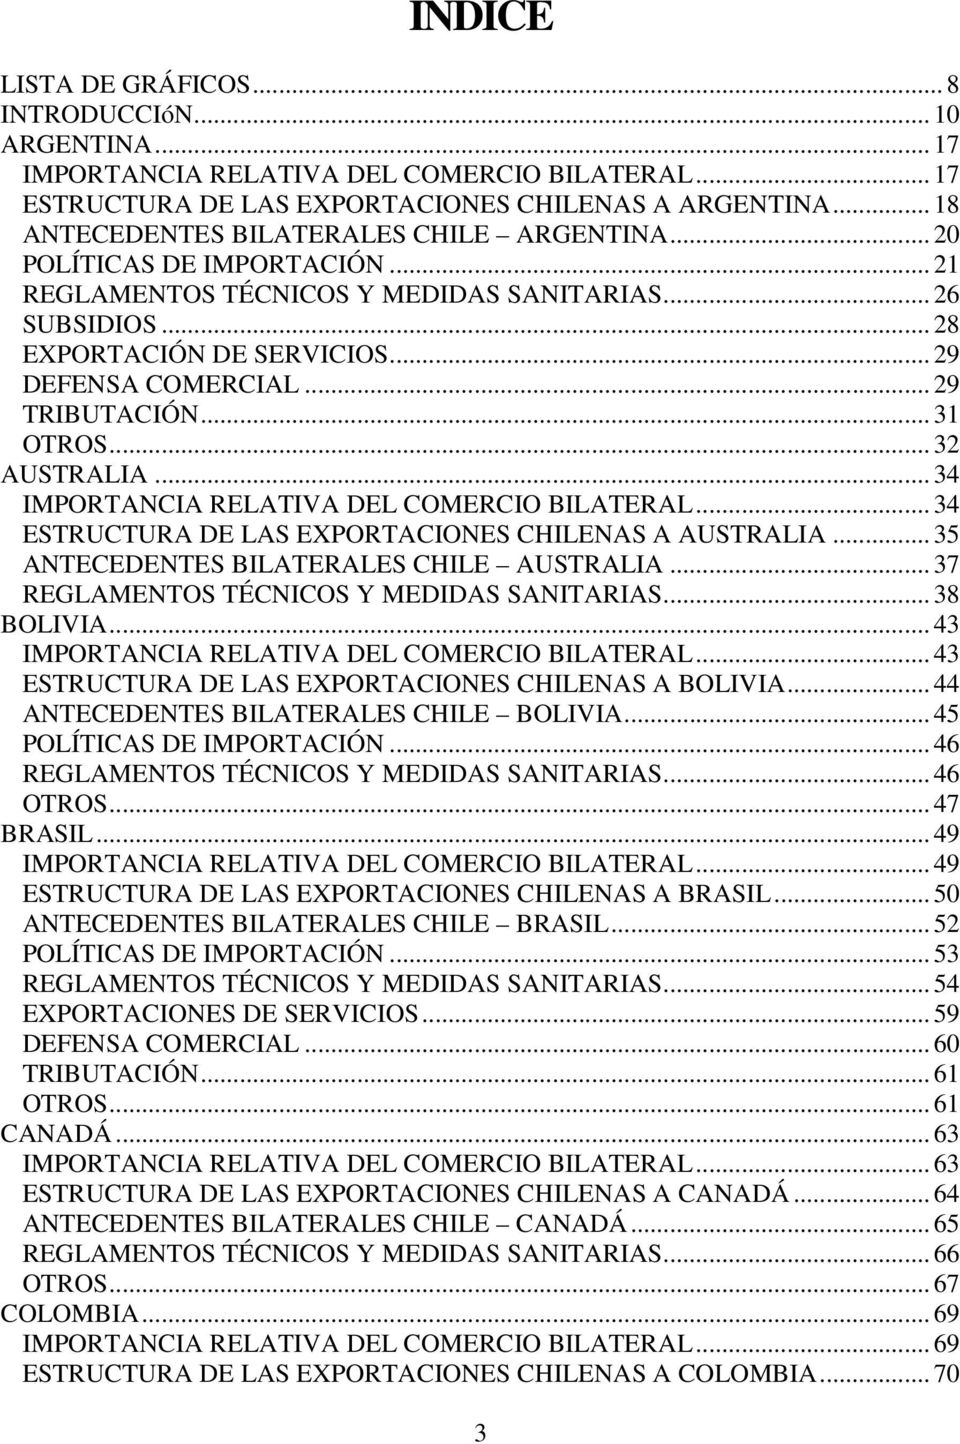 .. 29 TRIBUTACIÓN... 31 OTROS... 32 AUSTRALIA... 34 IMPORTANCIA RELATIVA DEL COMERCIO BILATERAL... 34 ESTRUCTURA DE LAS EXPORTACIONES CHILENAS A AUSTRALIA... 35 ANTECEDENTES BILATERALES CHILE AUSTRALIA.